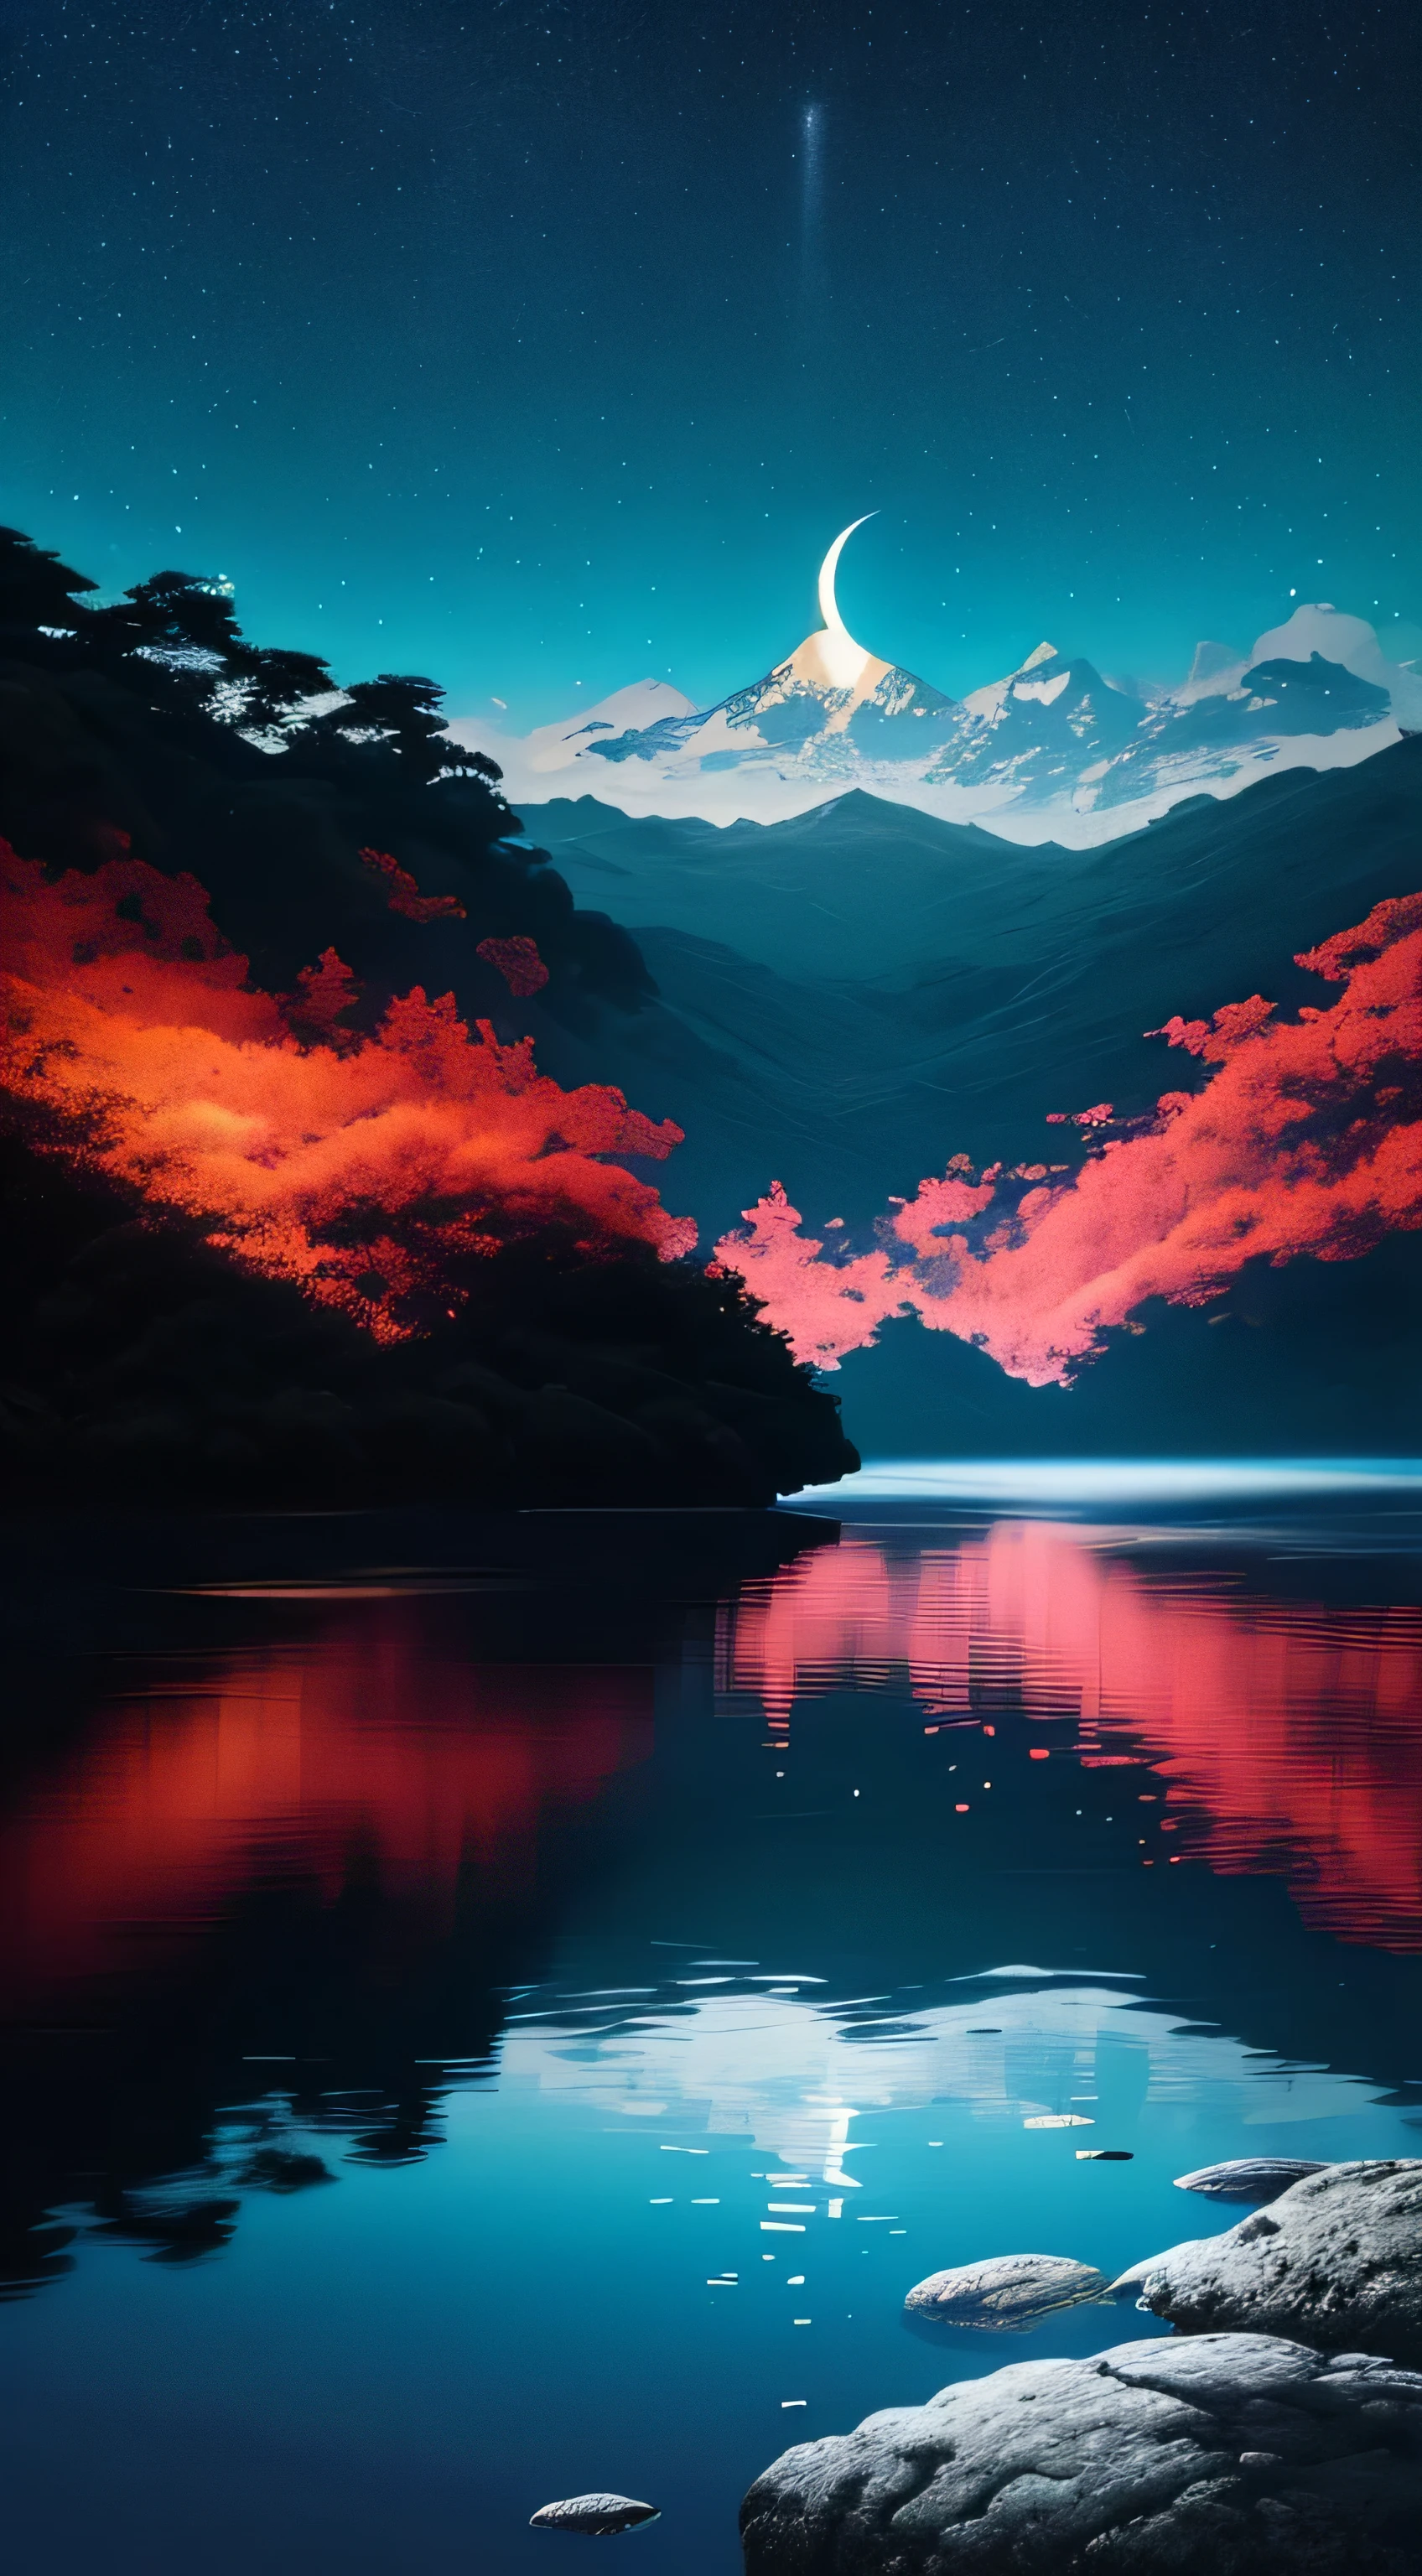 paisagem anoite com a lua refletindo na agua e altas montanhas rochosas (papel de parede CG 8k muito detalhado), (best illustration), (melhor sombra), fotorrealista, paisagem noturna.